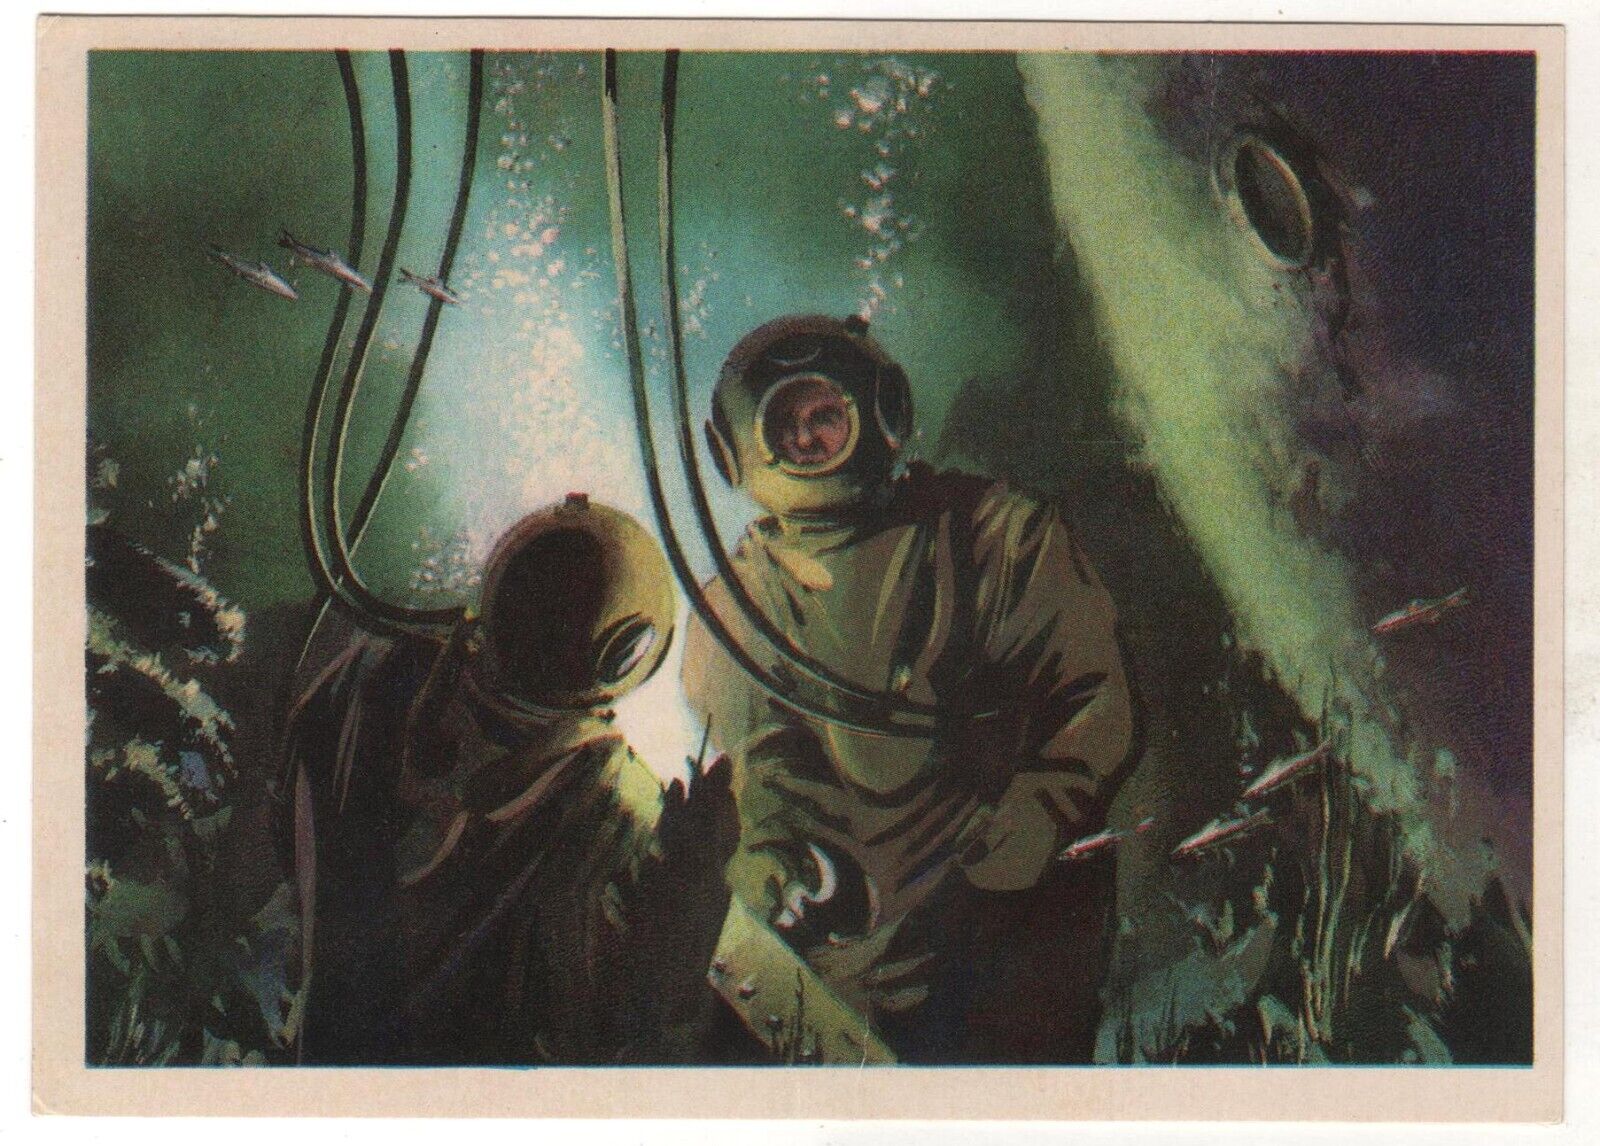 1974 Man & Ocean DIVERS Underwater Welding under water. OLD Russian Postcard